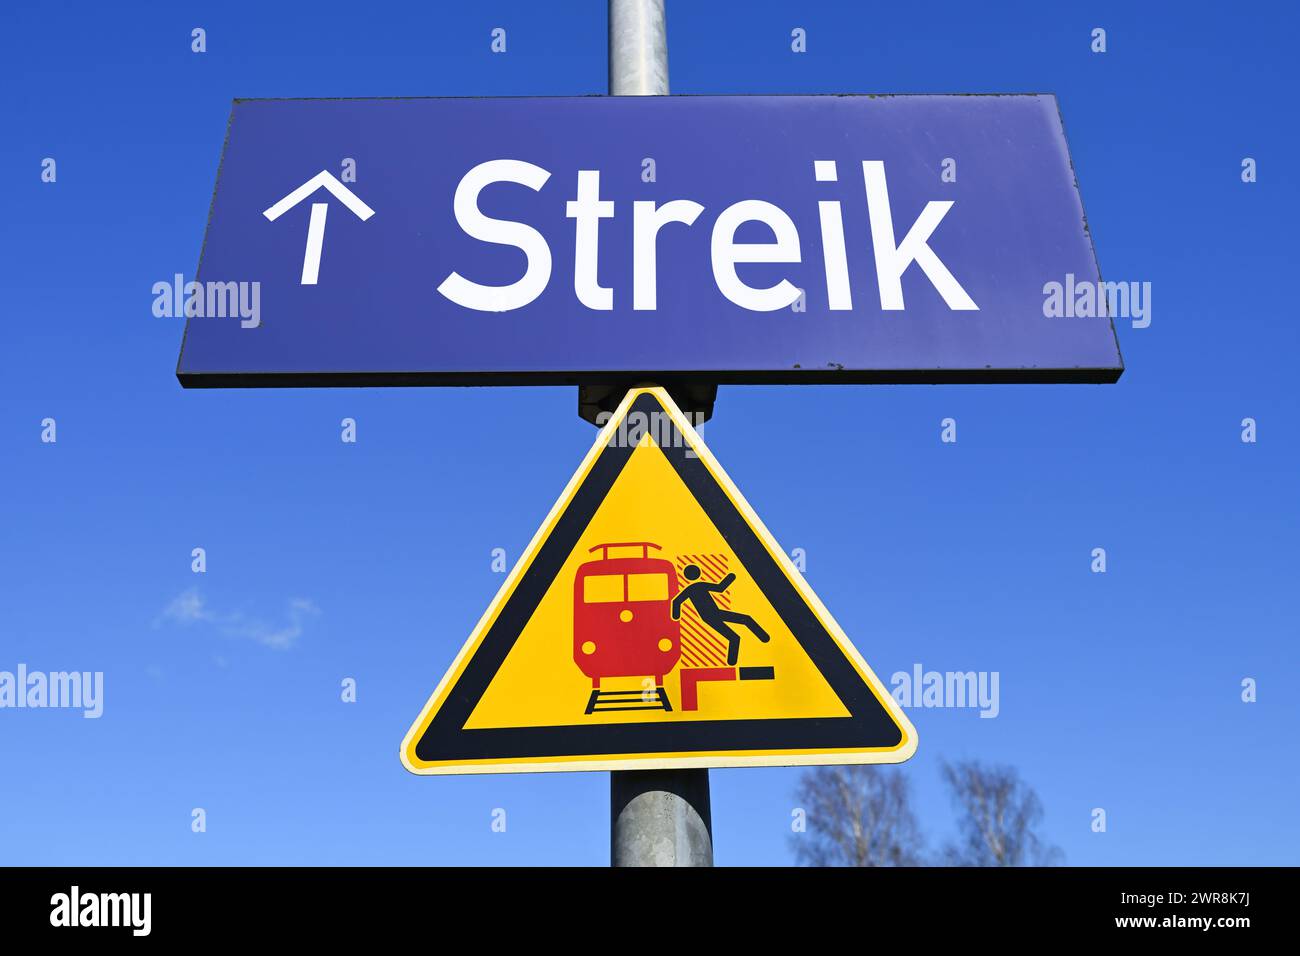 Cartello sulla piattaforma con le parole "Strike", fotomontaggio Foto Stock